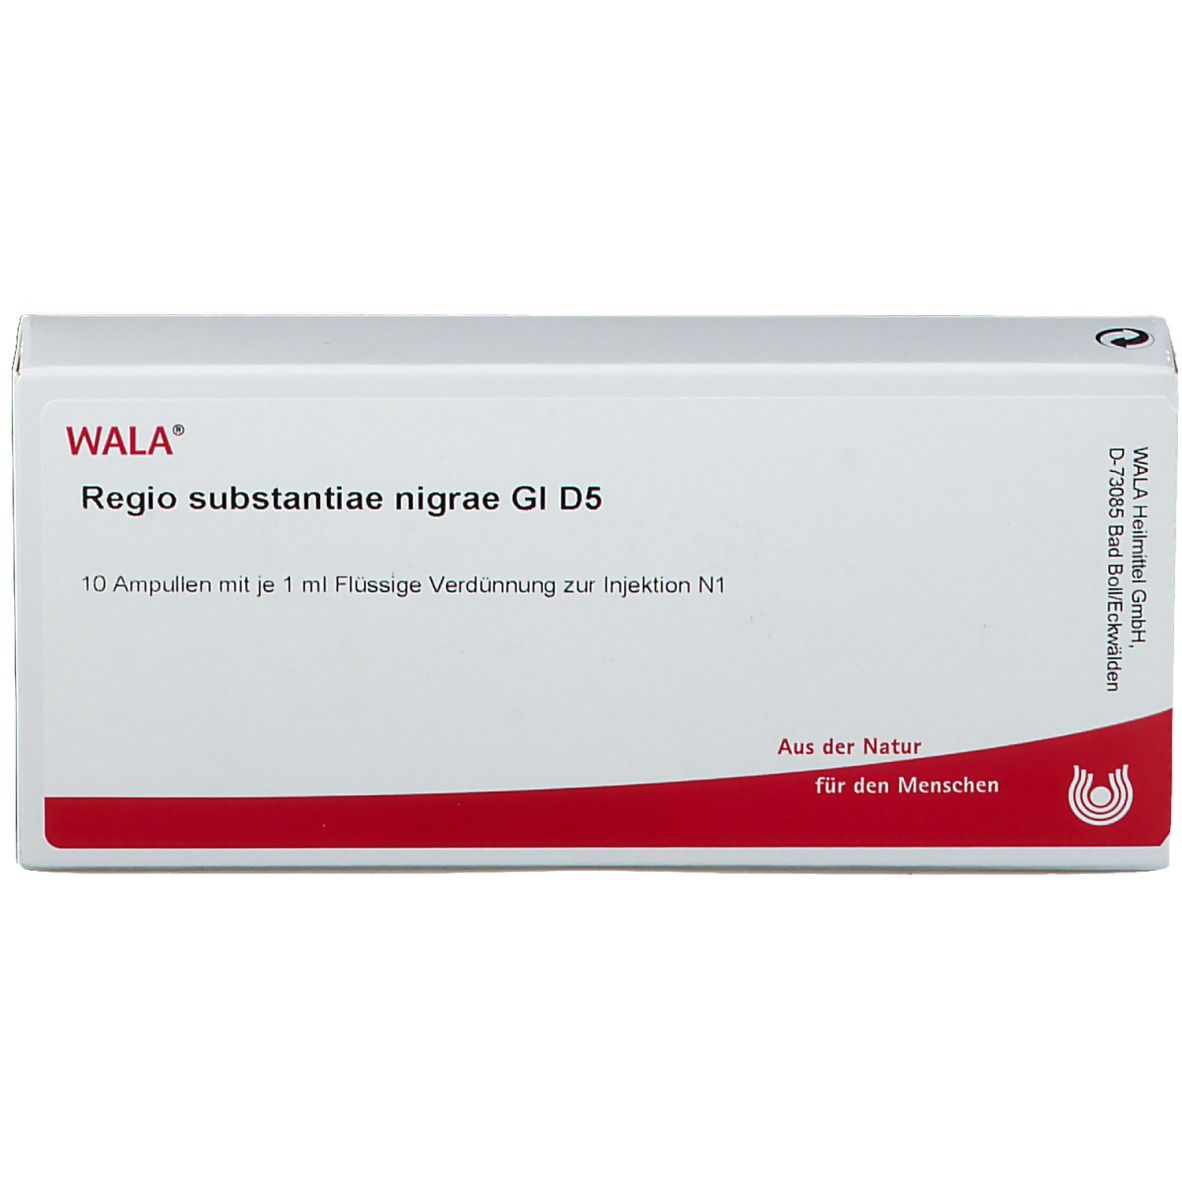 Wala® Regio substantiae nigrae Gl D 5